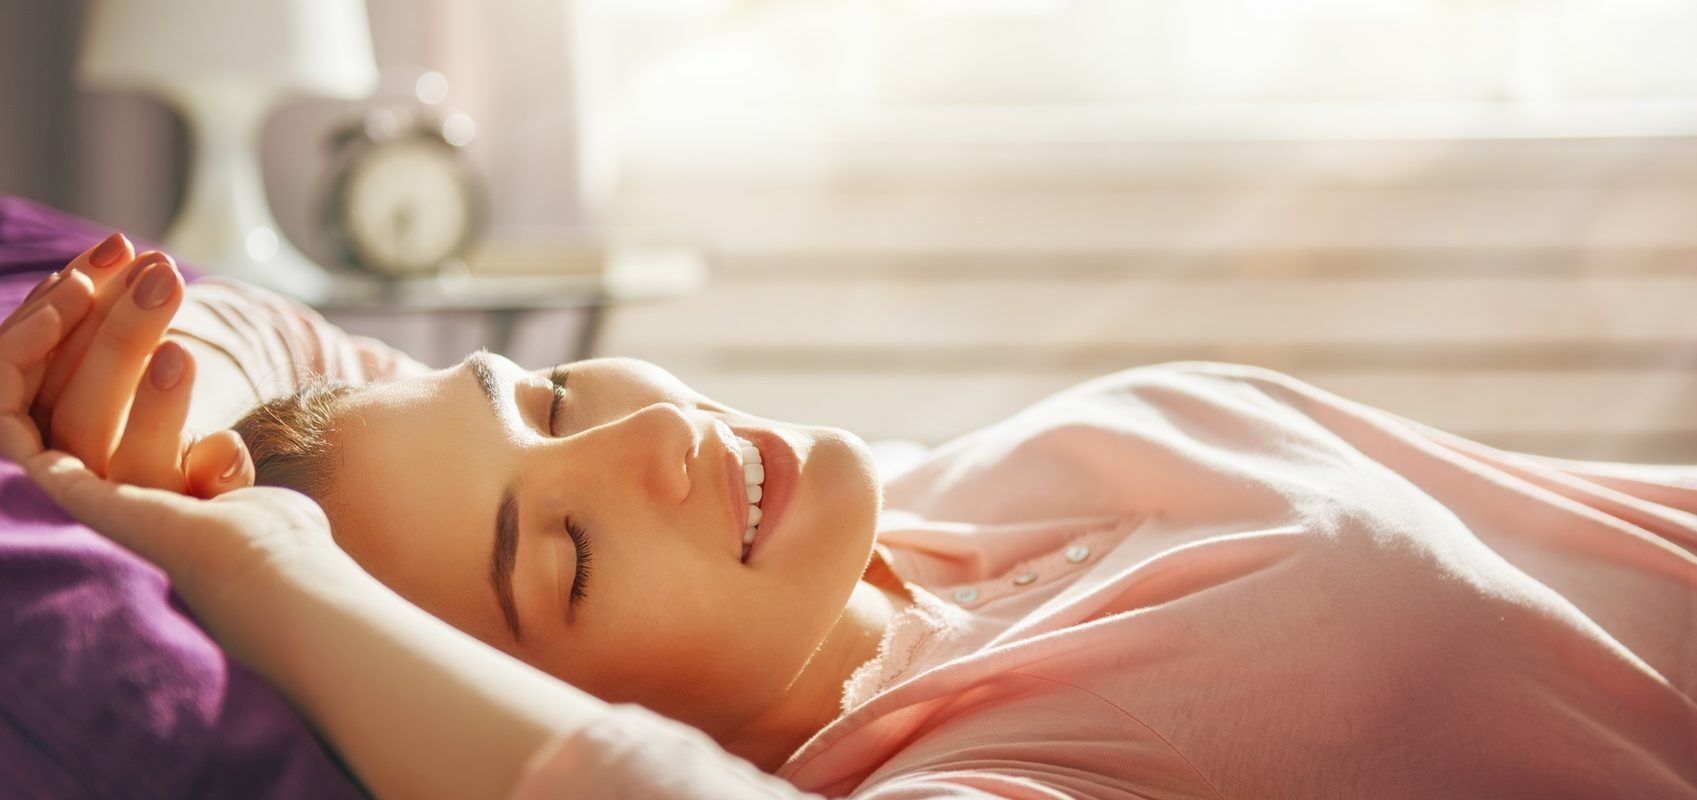 Sen na zdrowie - dlaczego nie warto zarywać nocy? 7 powodów, dla których warto się wysypiać. Kobieta w różowej bluzce przeciąga się w łóżku o poranku.